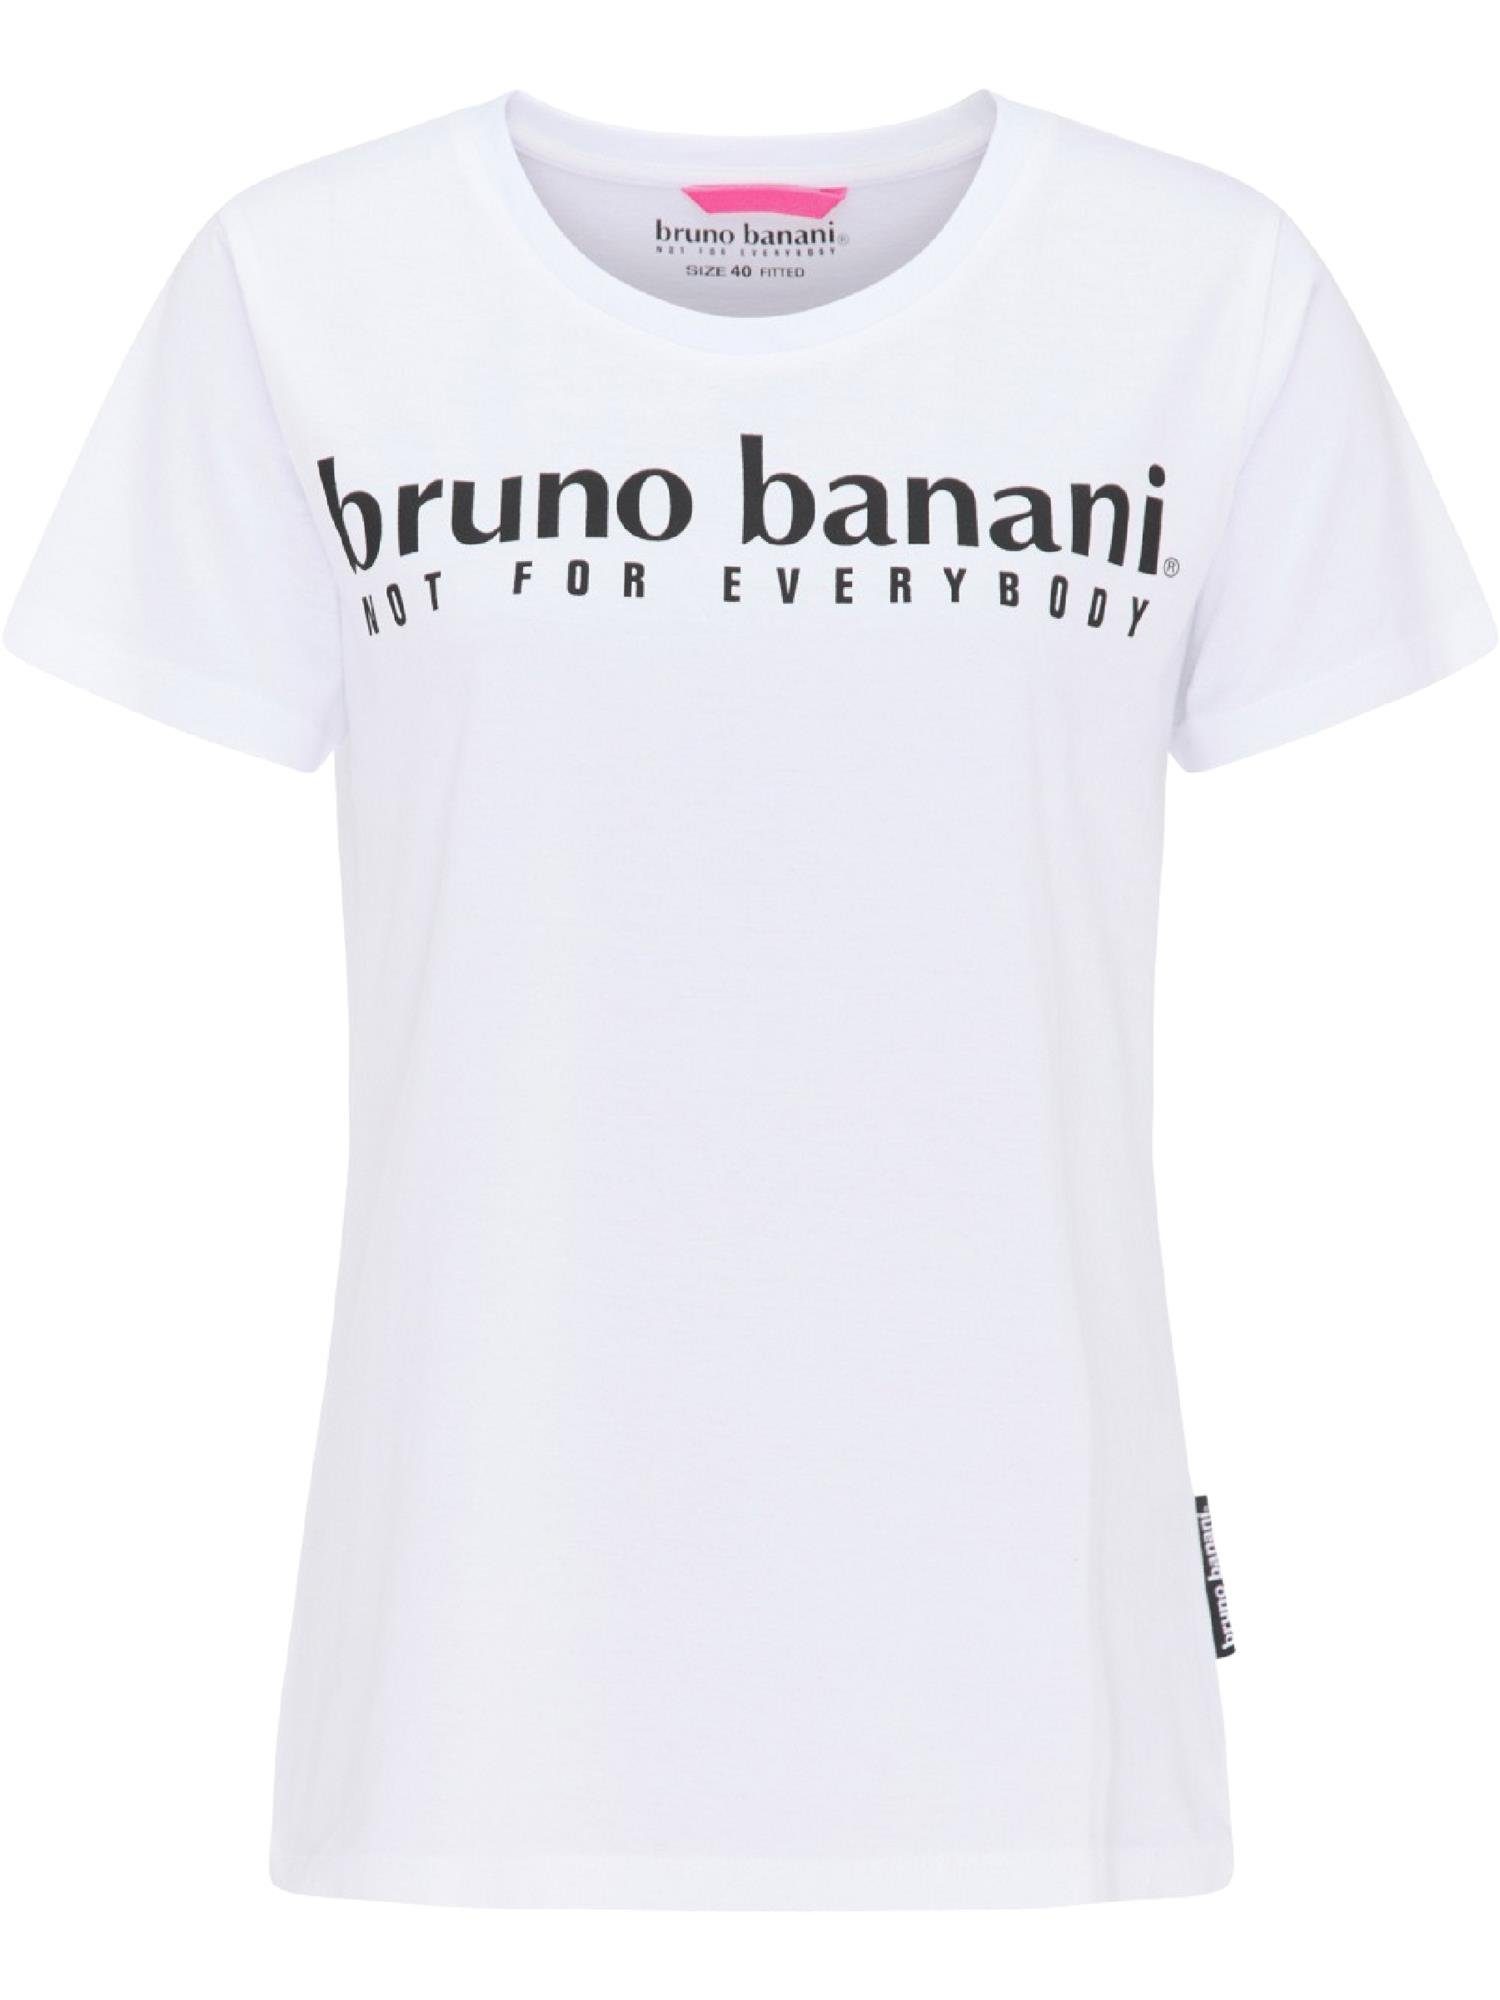 Banani Bruno BLACK T-Shirt